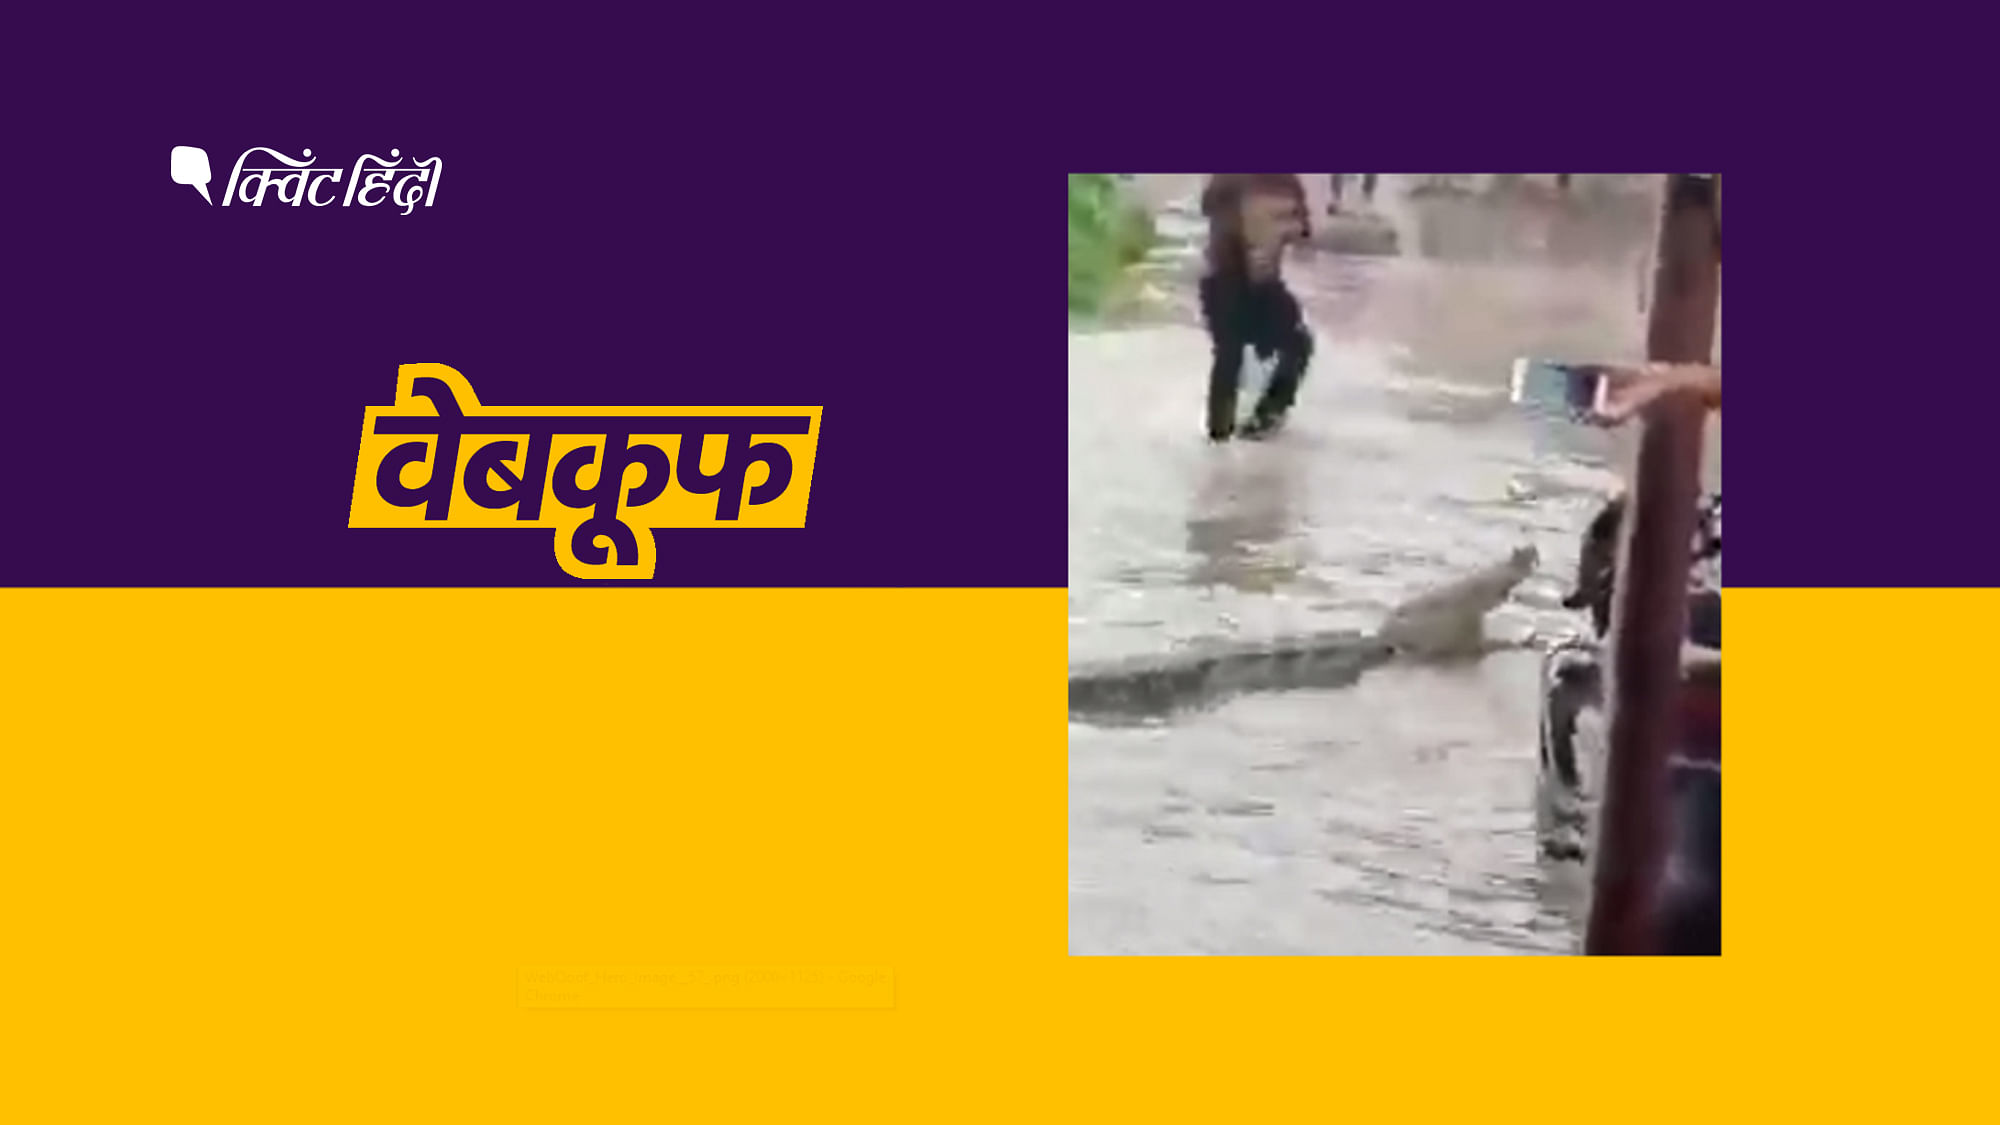 वीडियो को इस दावे के साथ शेयर किया जा रहा है कि “भारी बारिश के दौरान पटना में मगरमच्छ”&nbsp;